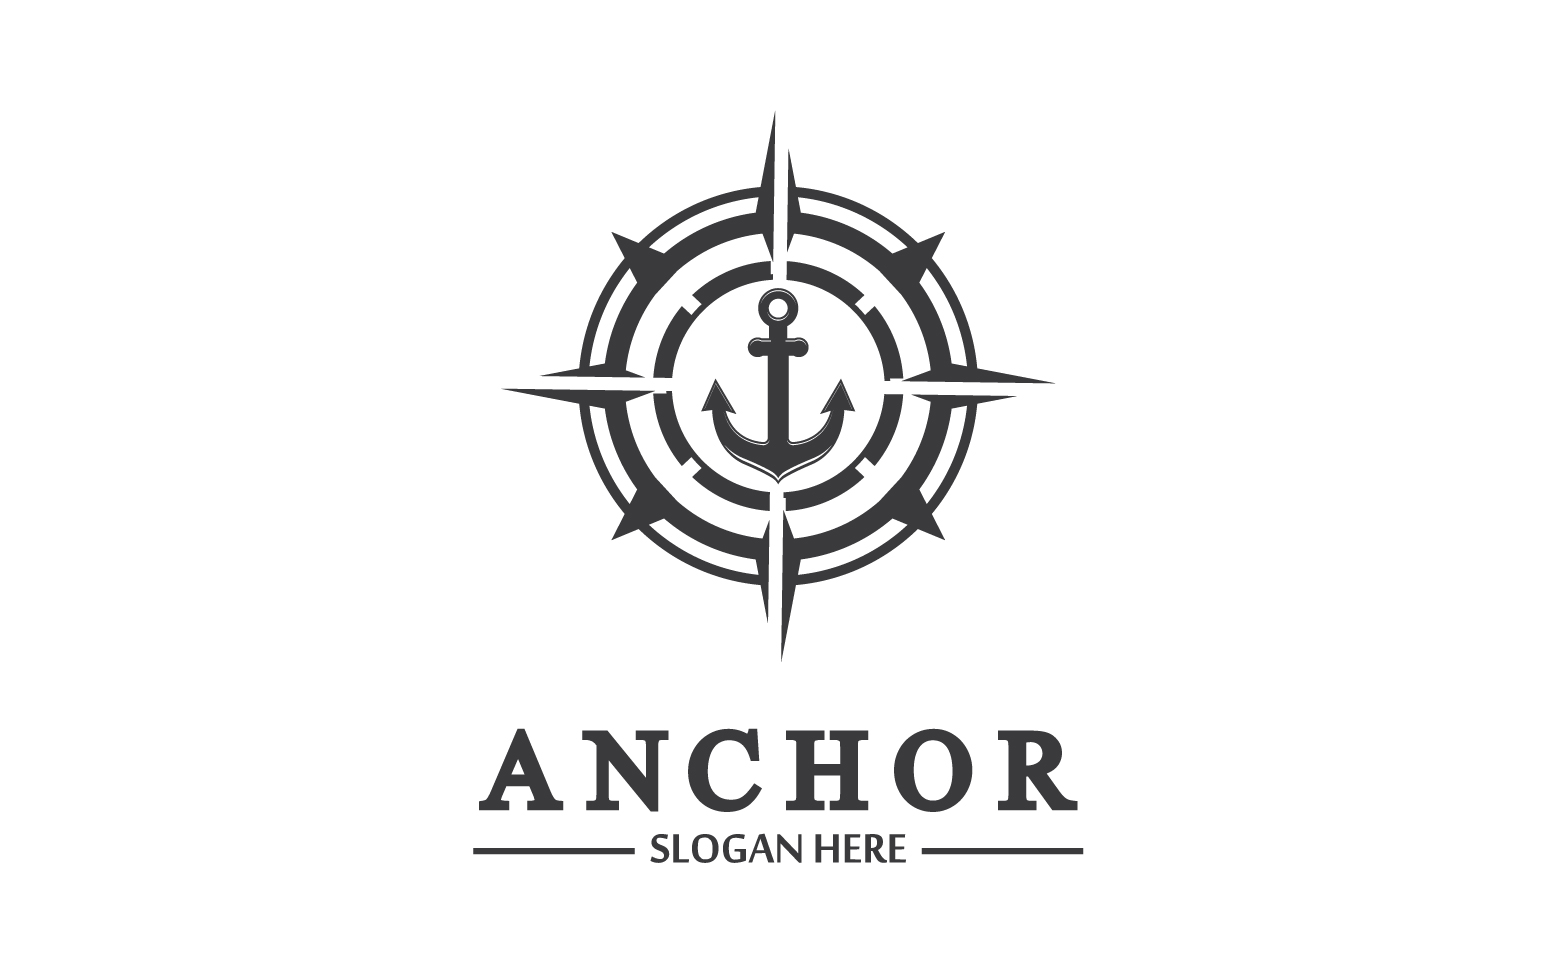 Anchor icon logo template vector v9